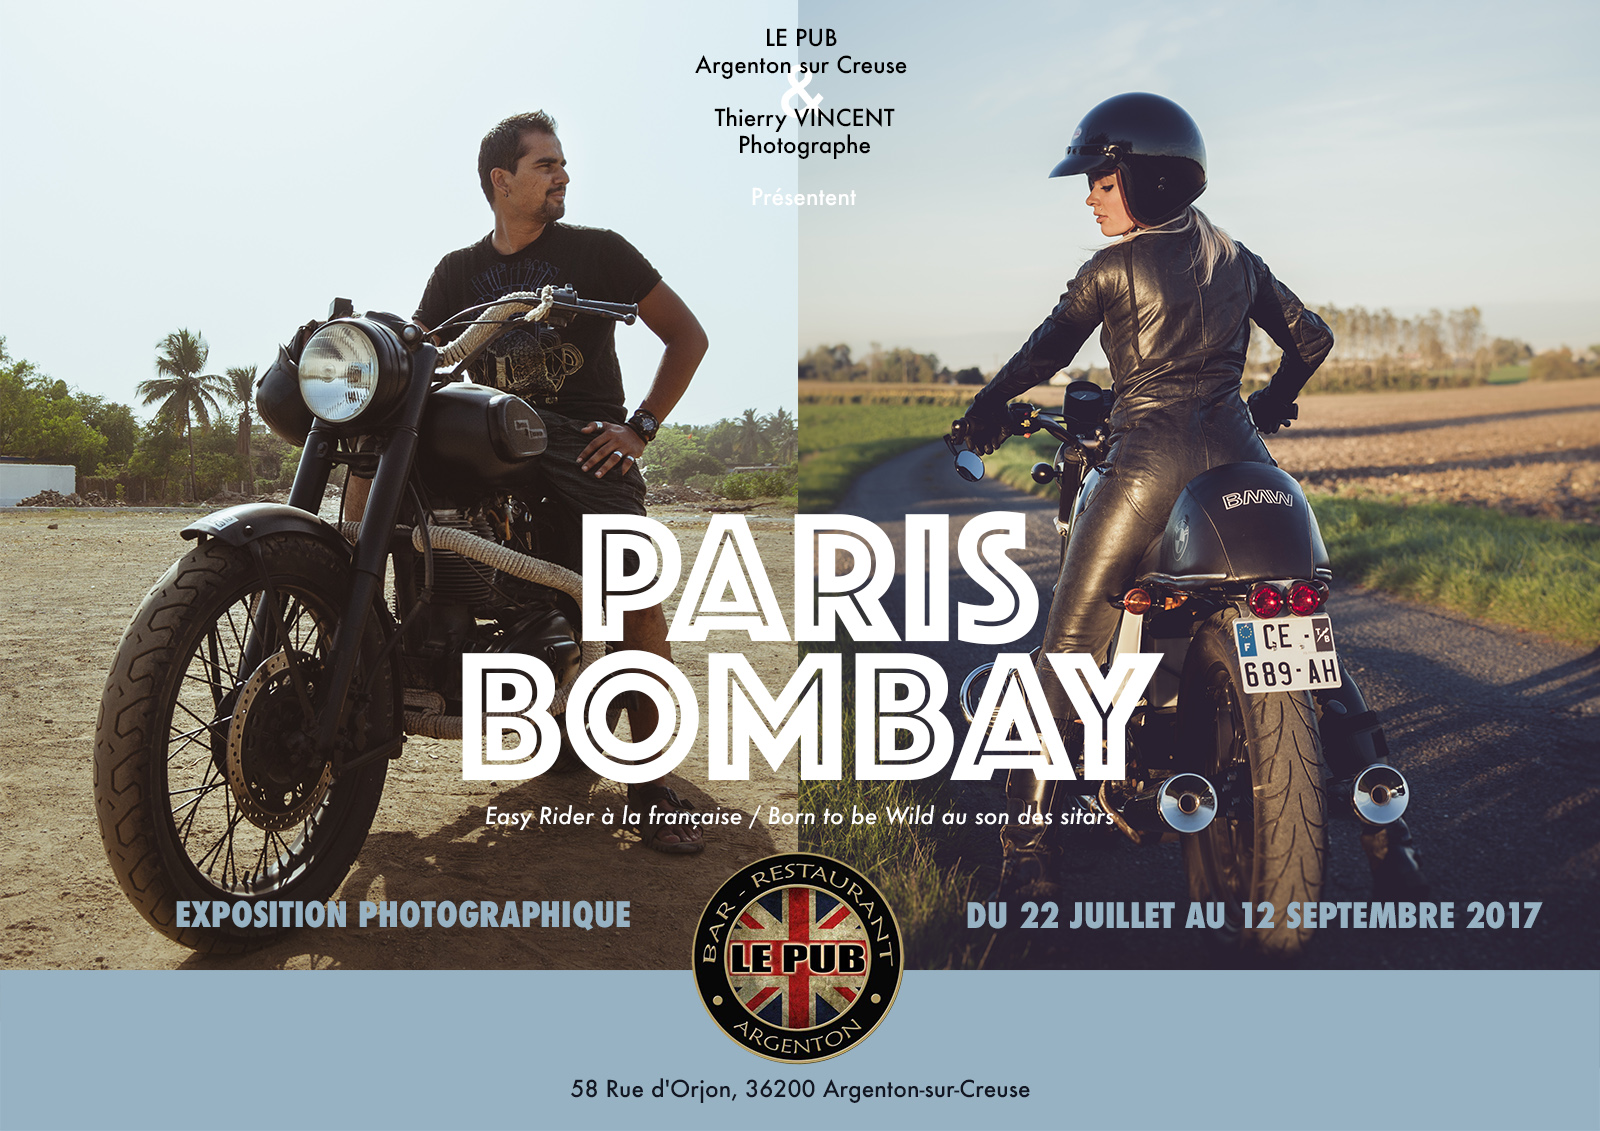 Les motos et les motards s’exposent dans les photos de Thierry Vincent